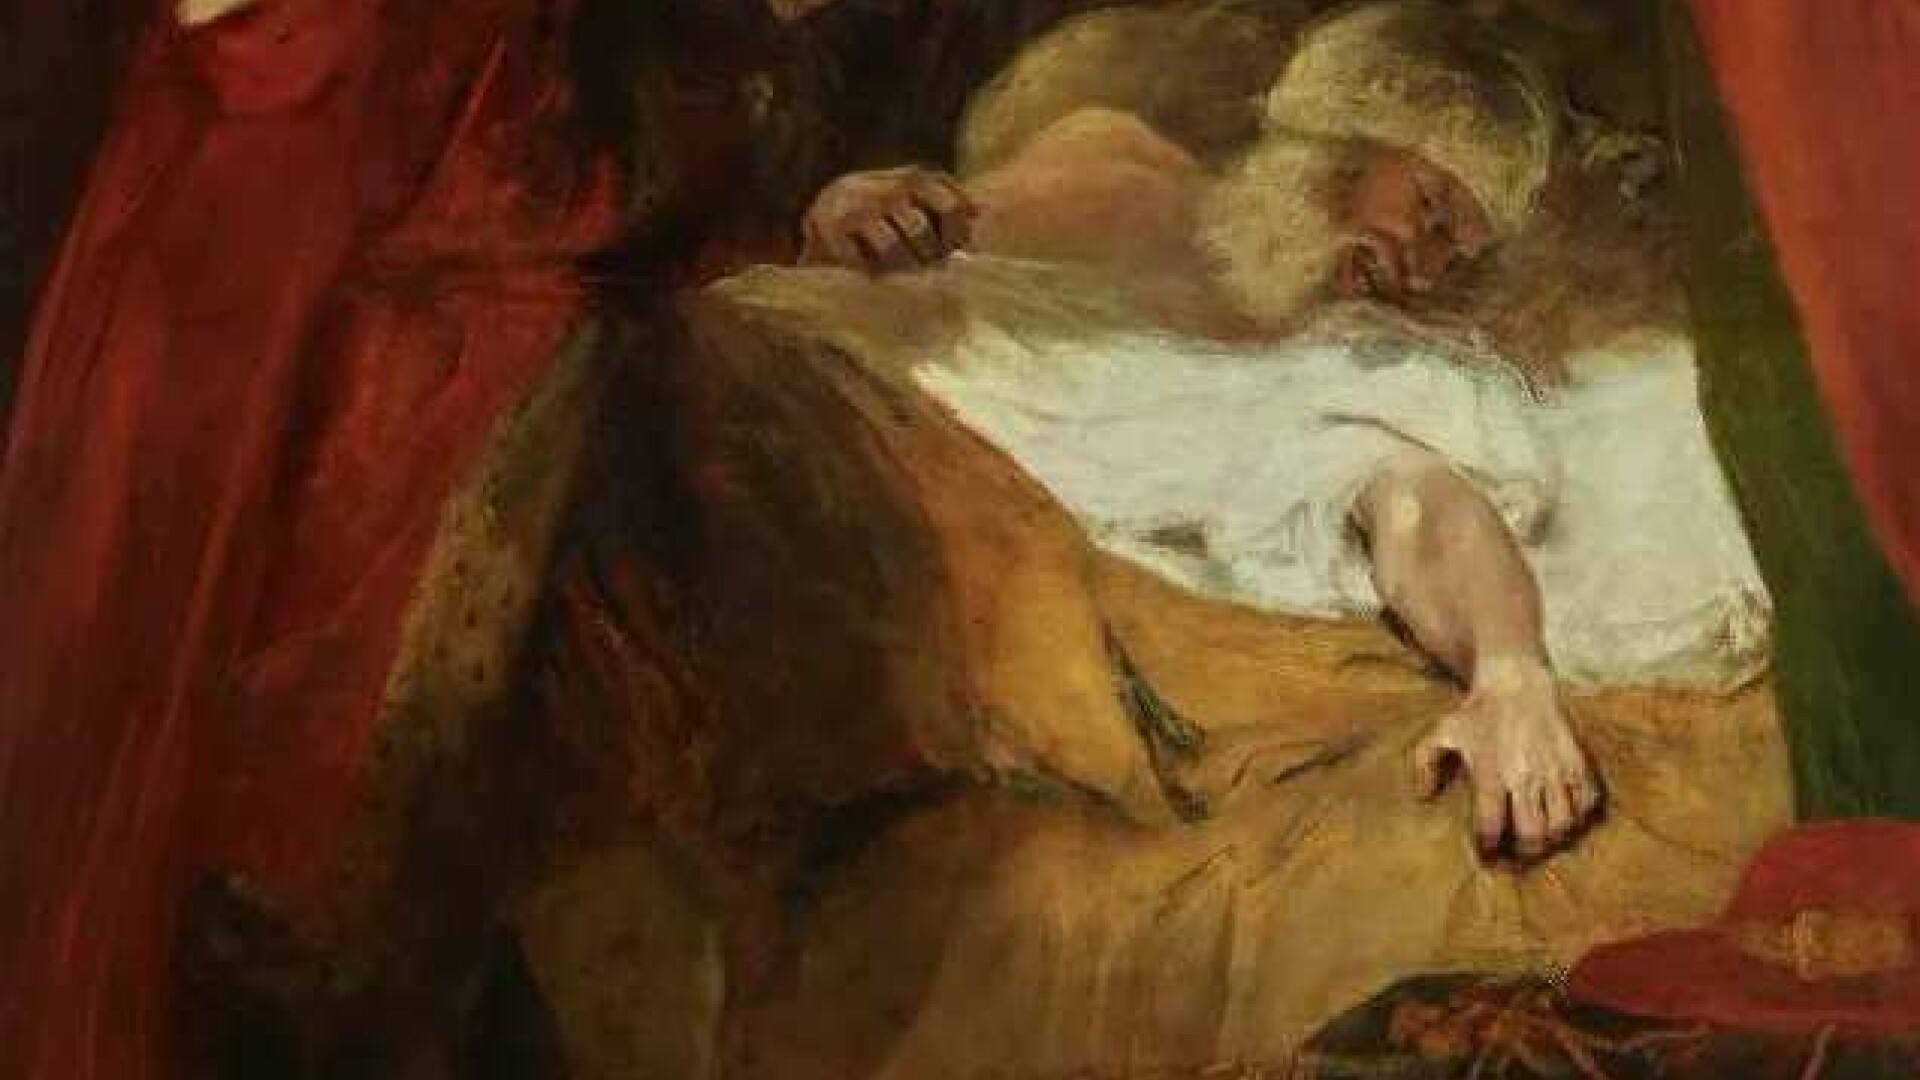 Diavolul ascuns în tablou a fost descoperit după 200 de ani. Cum a devenit invizibilă „figura demonică”